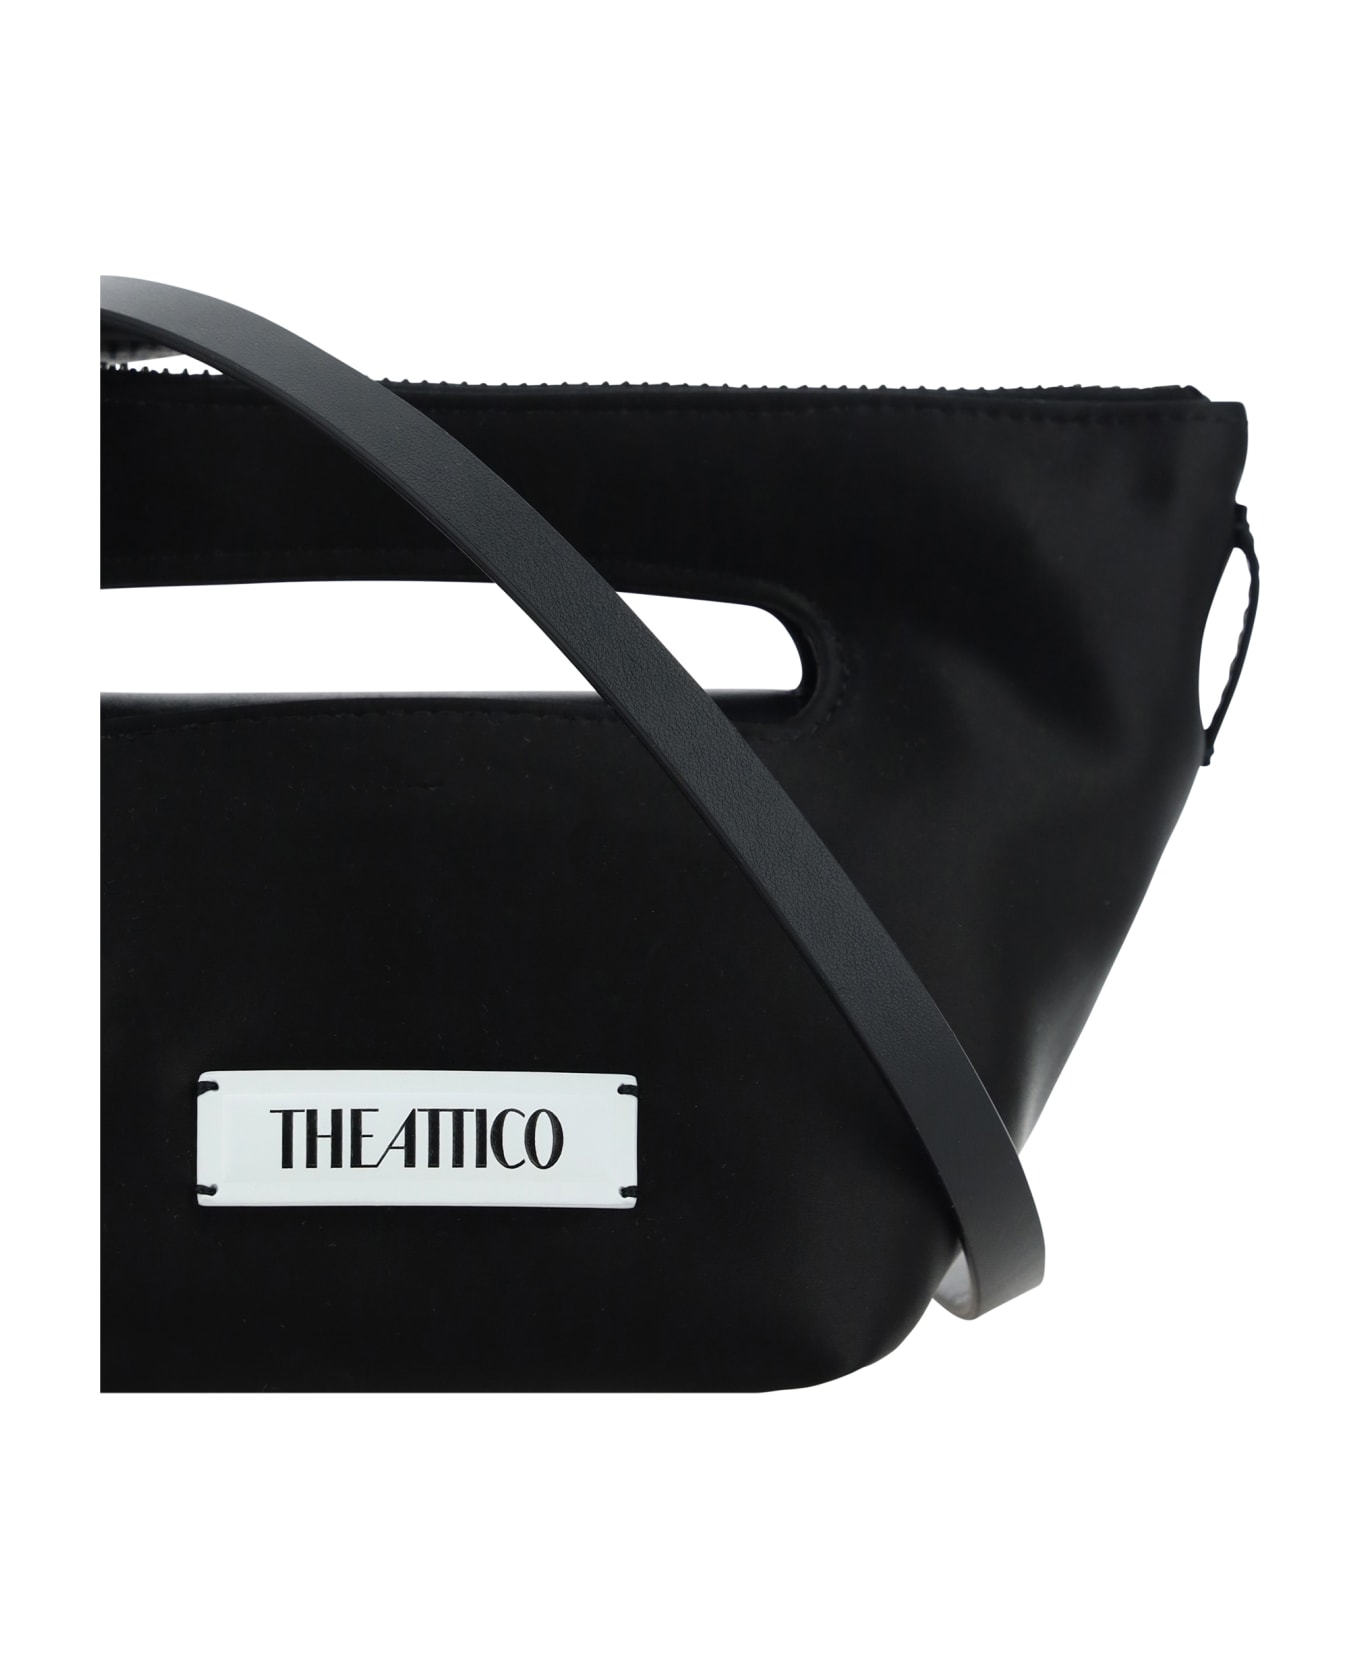 The Attico Via Dei Giardini 15 Handbag - Black